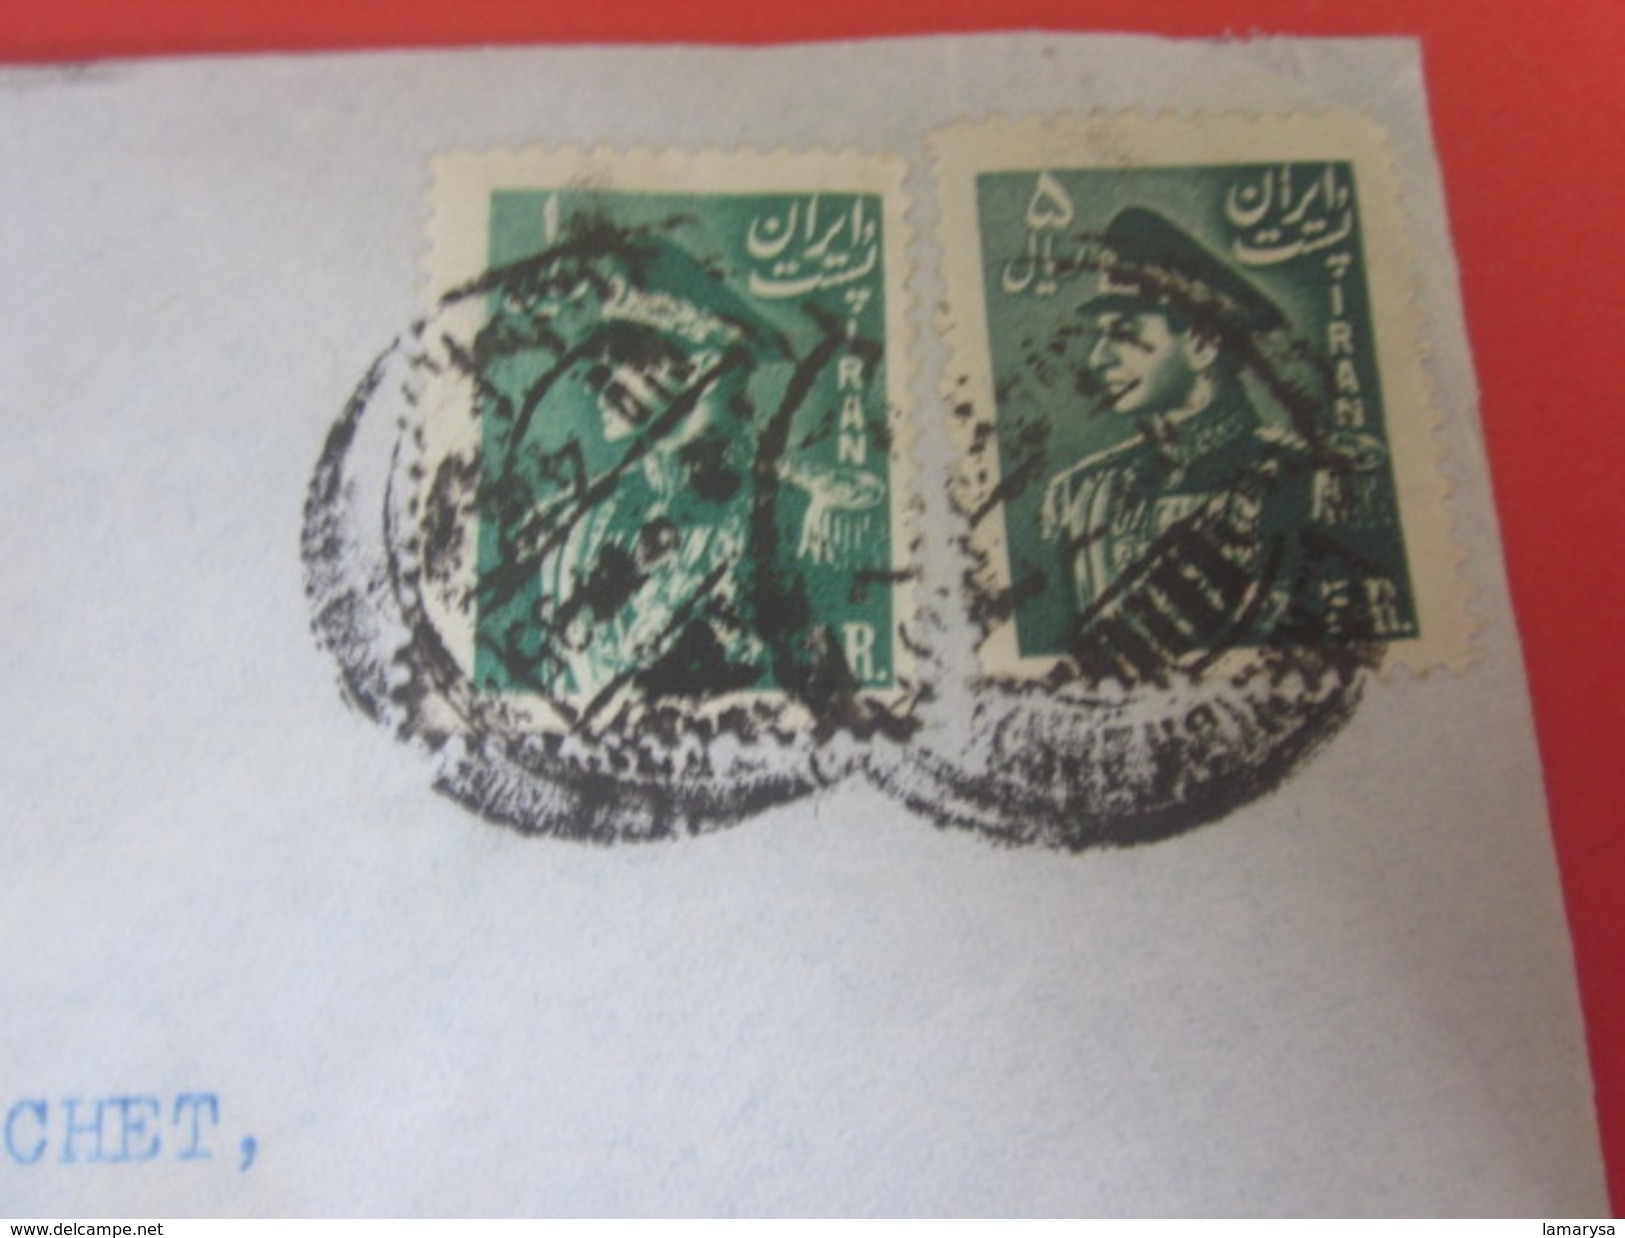 Asie Téhéran Iran-Letter-Lettre-Stamp -Timbre Shah By Air Mail Par Avion Via Aéra-Arménia Frankfurt Main  Allemagne - Iran